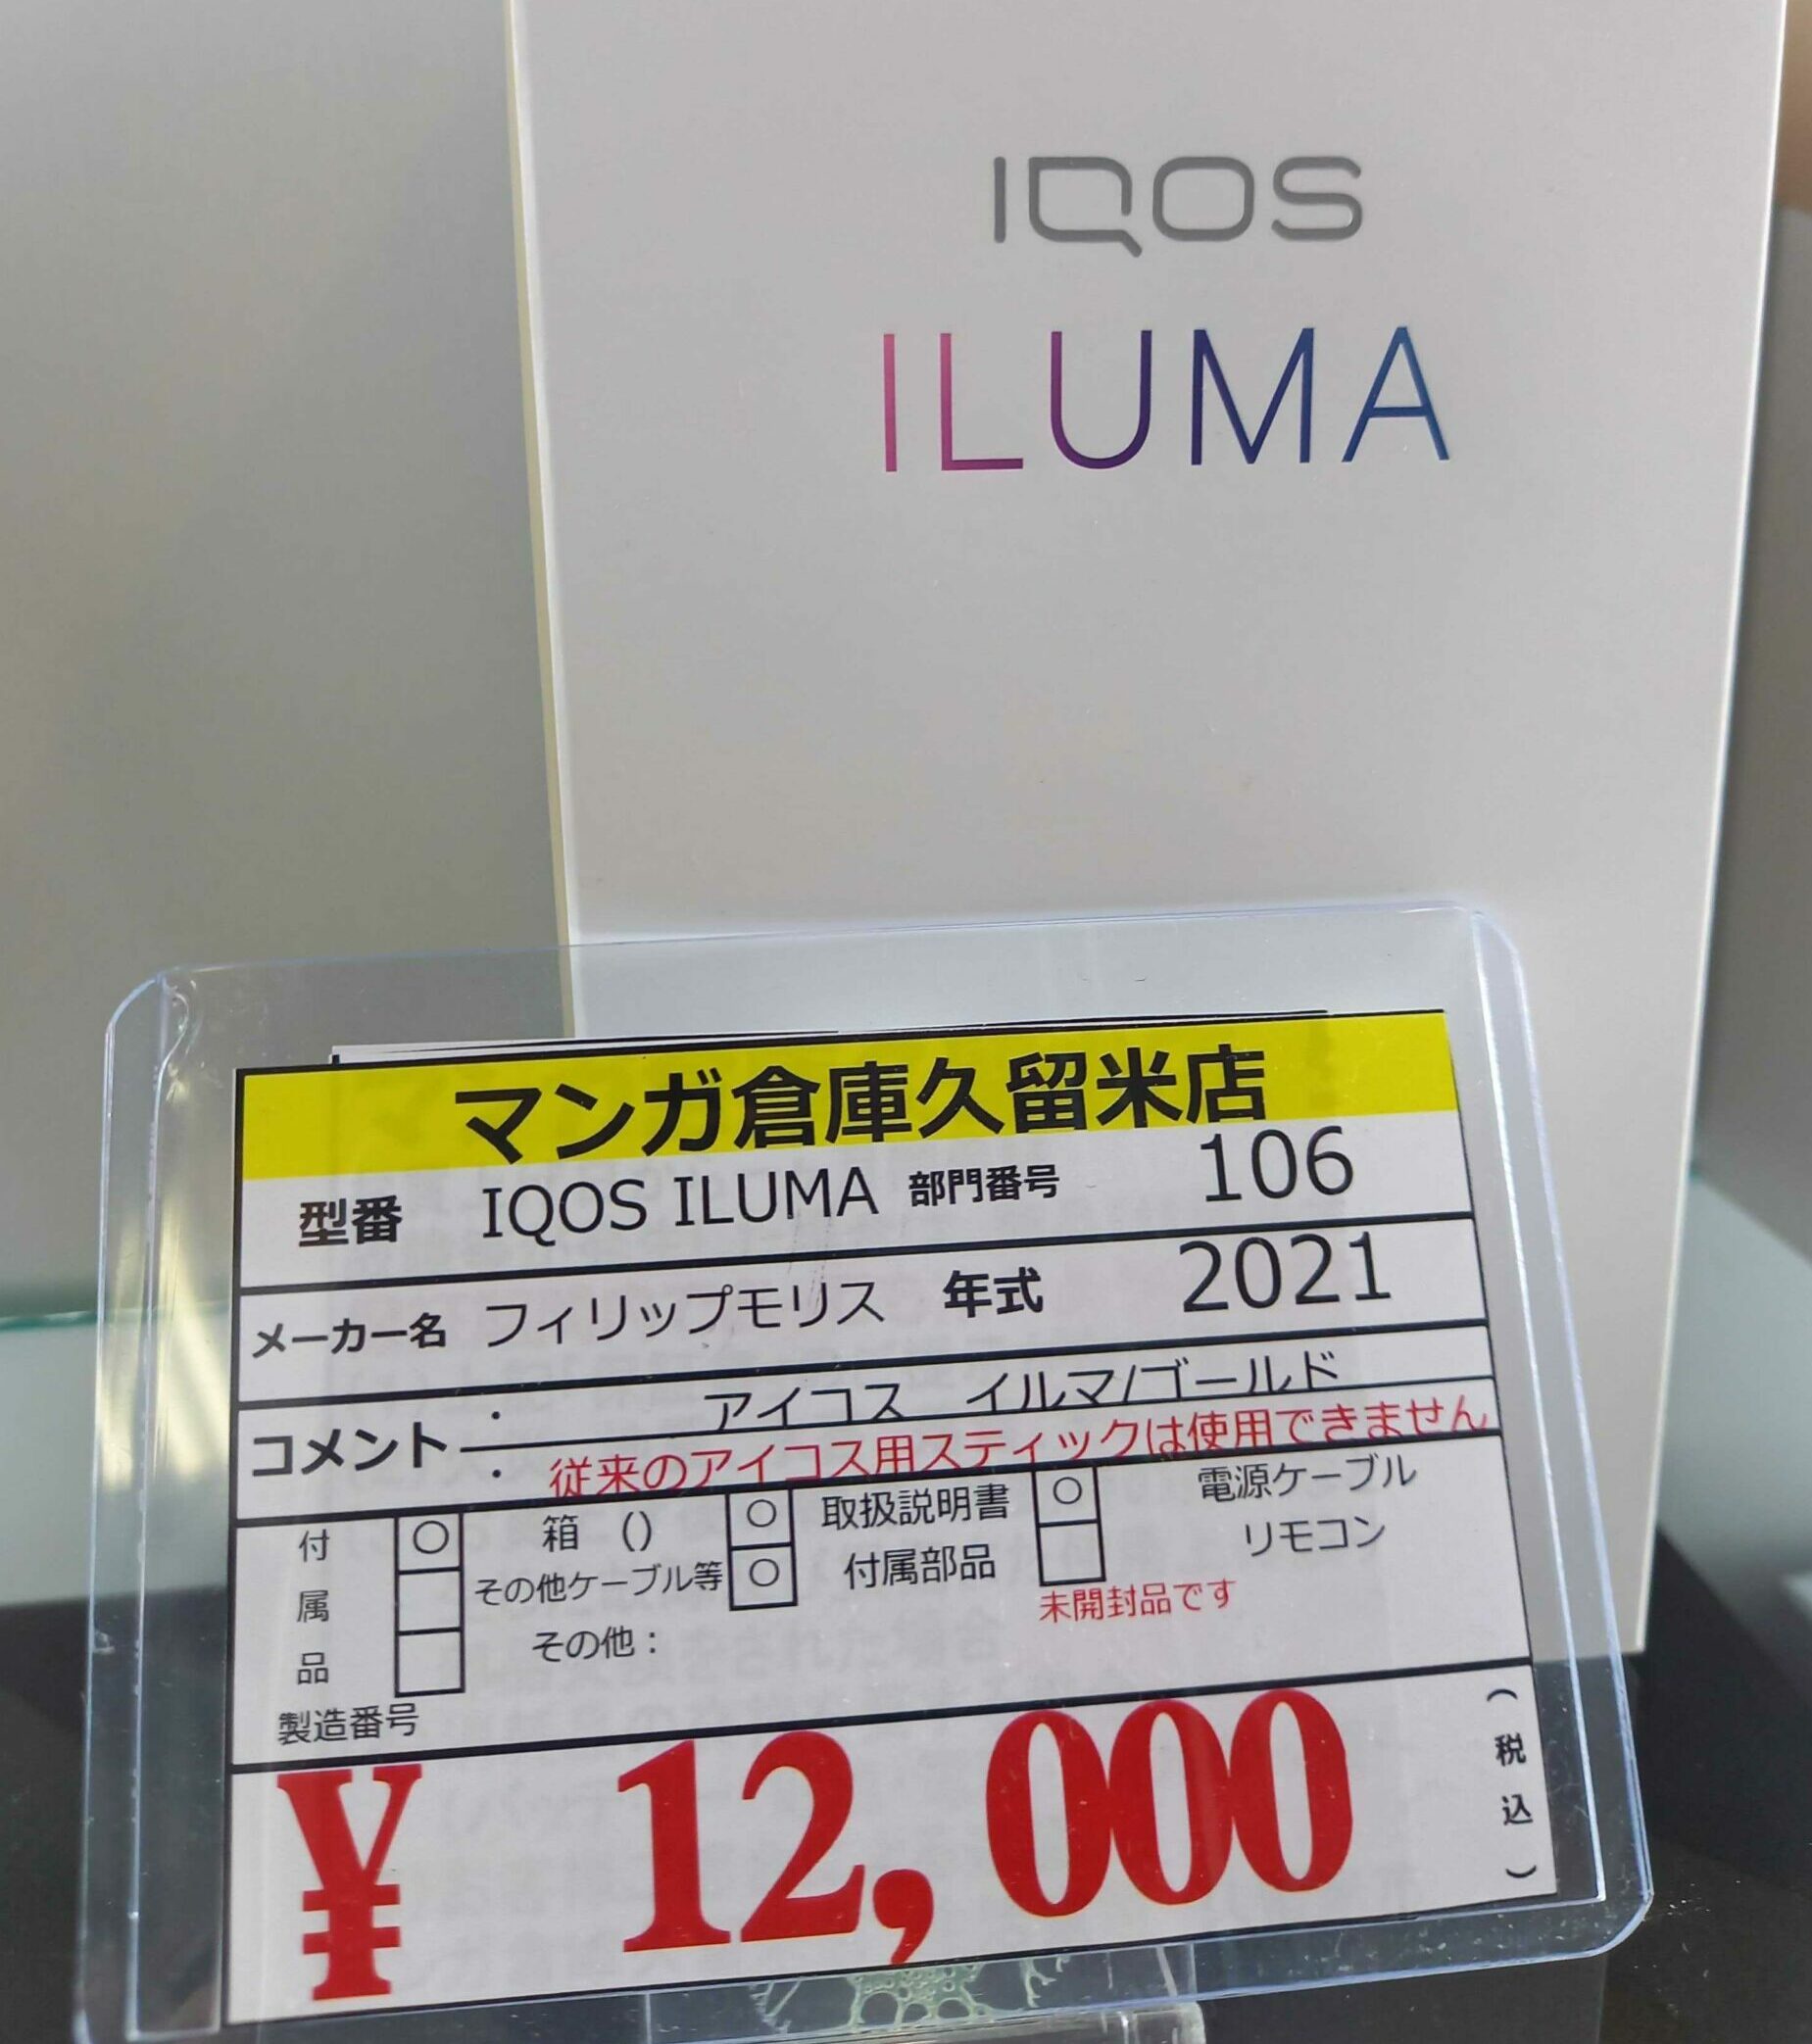 新型iQos ILUMA アイコスイルマゴールド未開封入荷しました